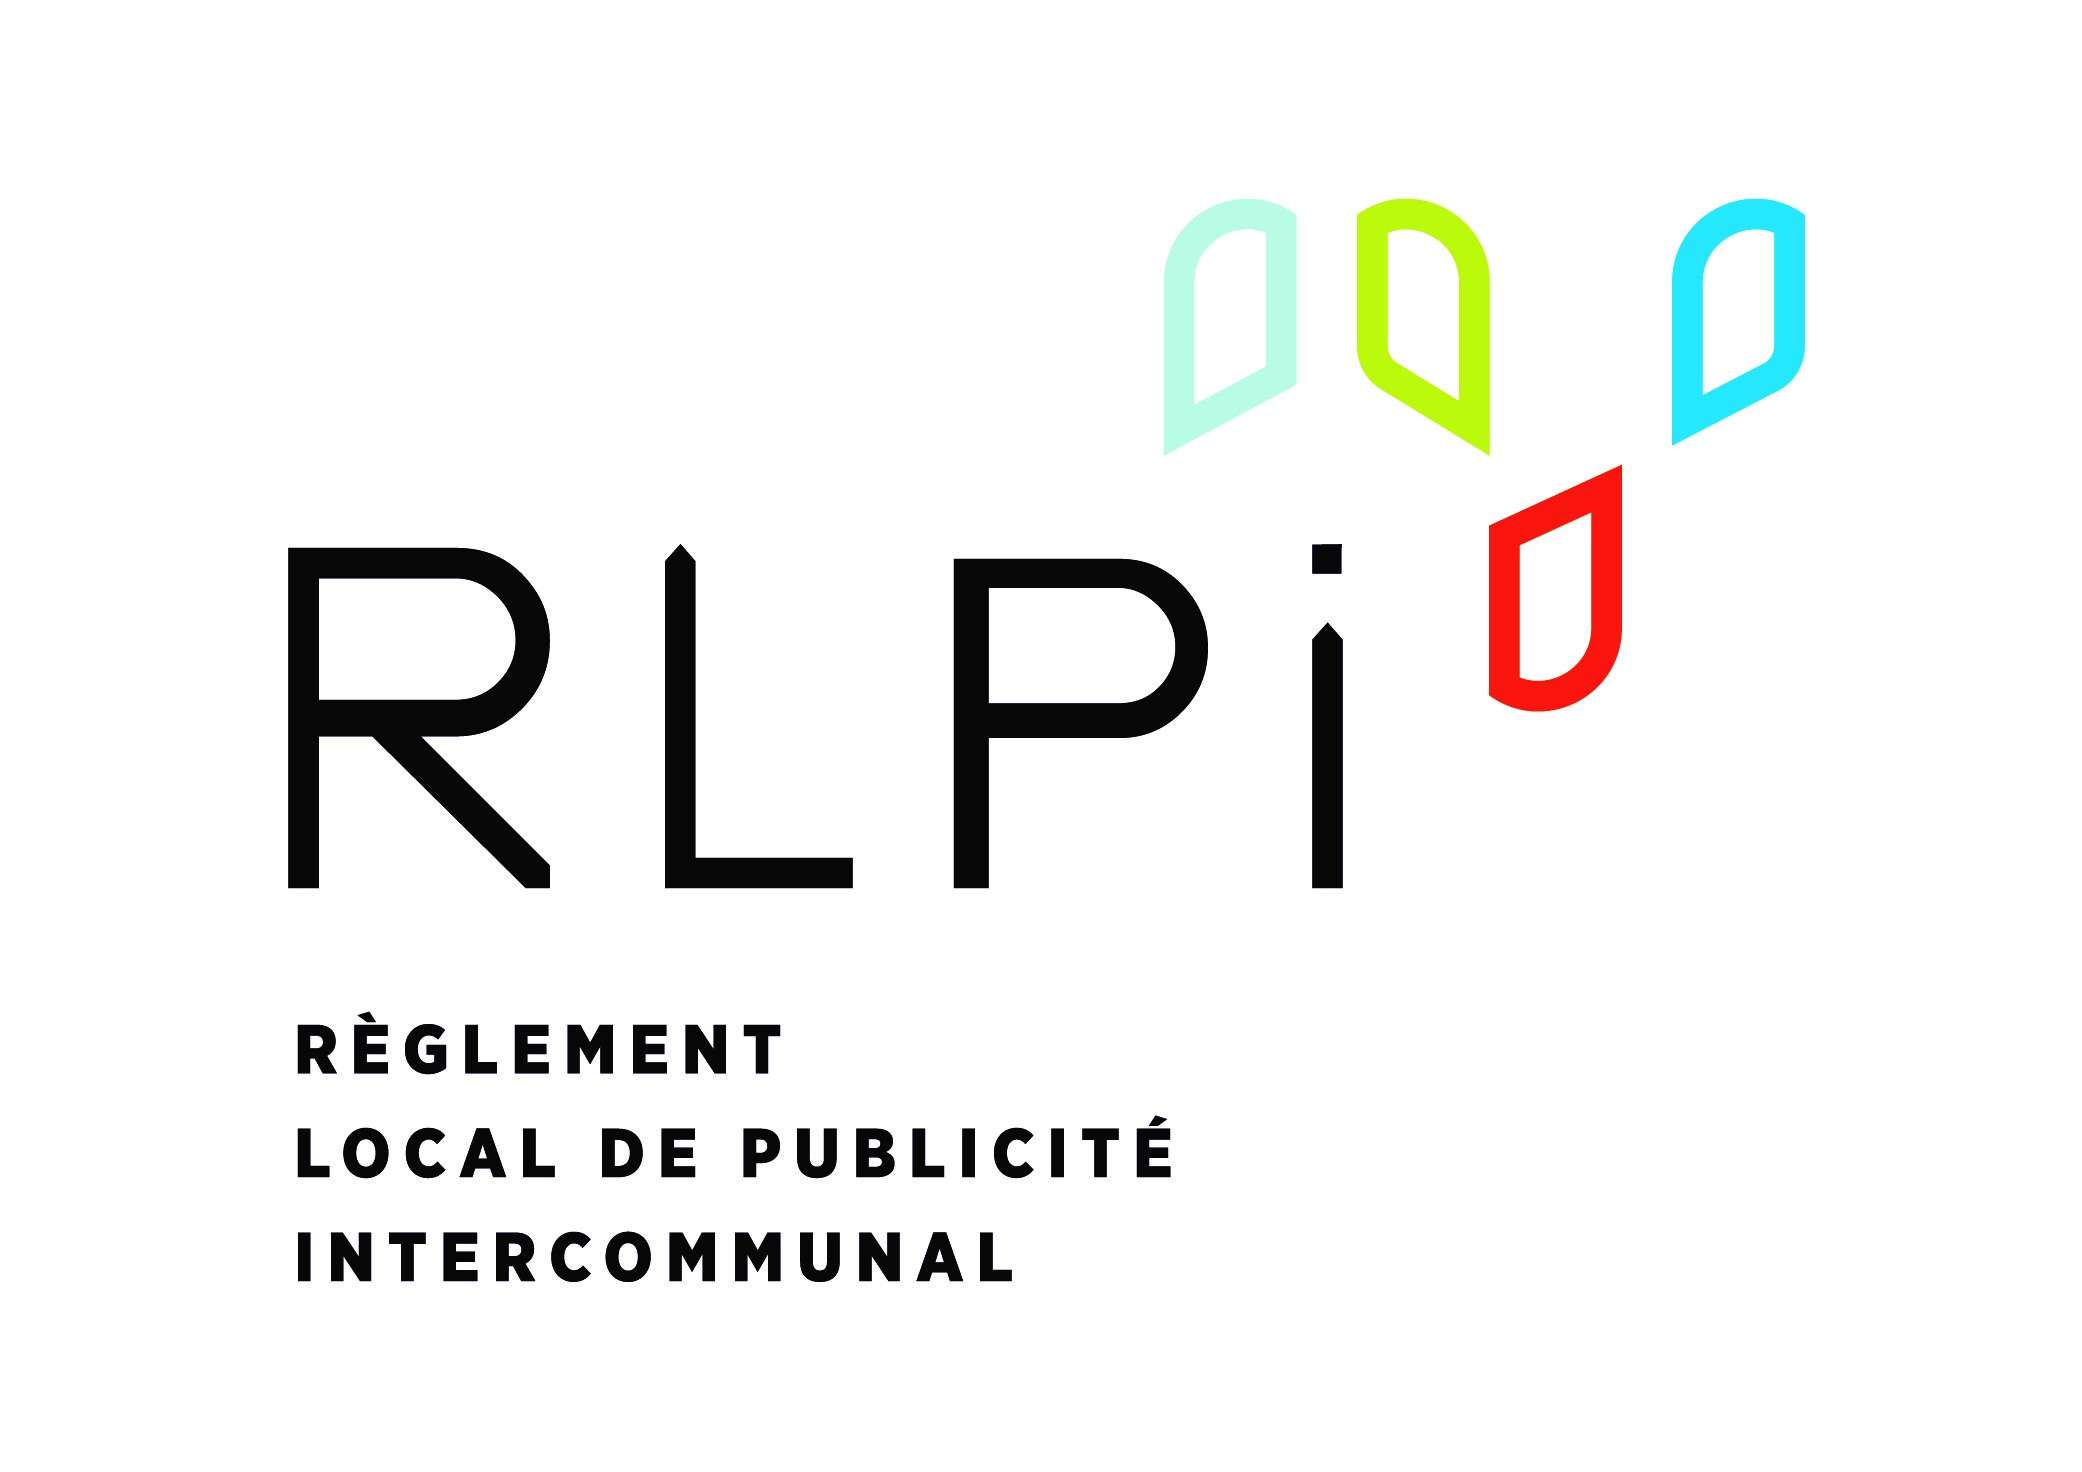   Règlement Local de Publicité intercommunal (RLPi) du Territoire Marseille Provence